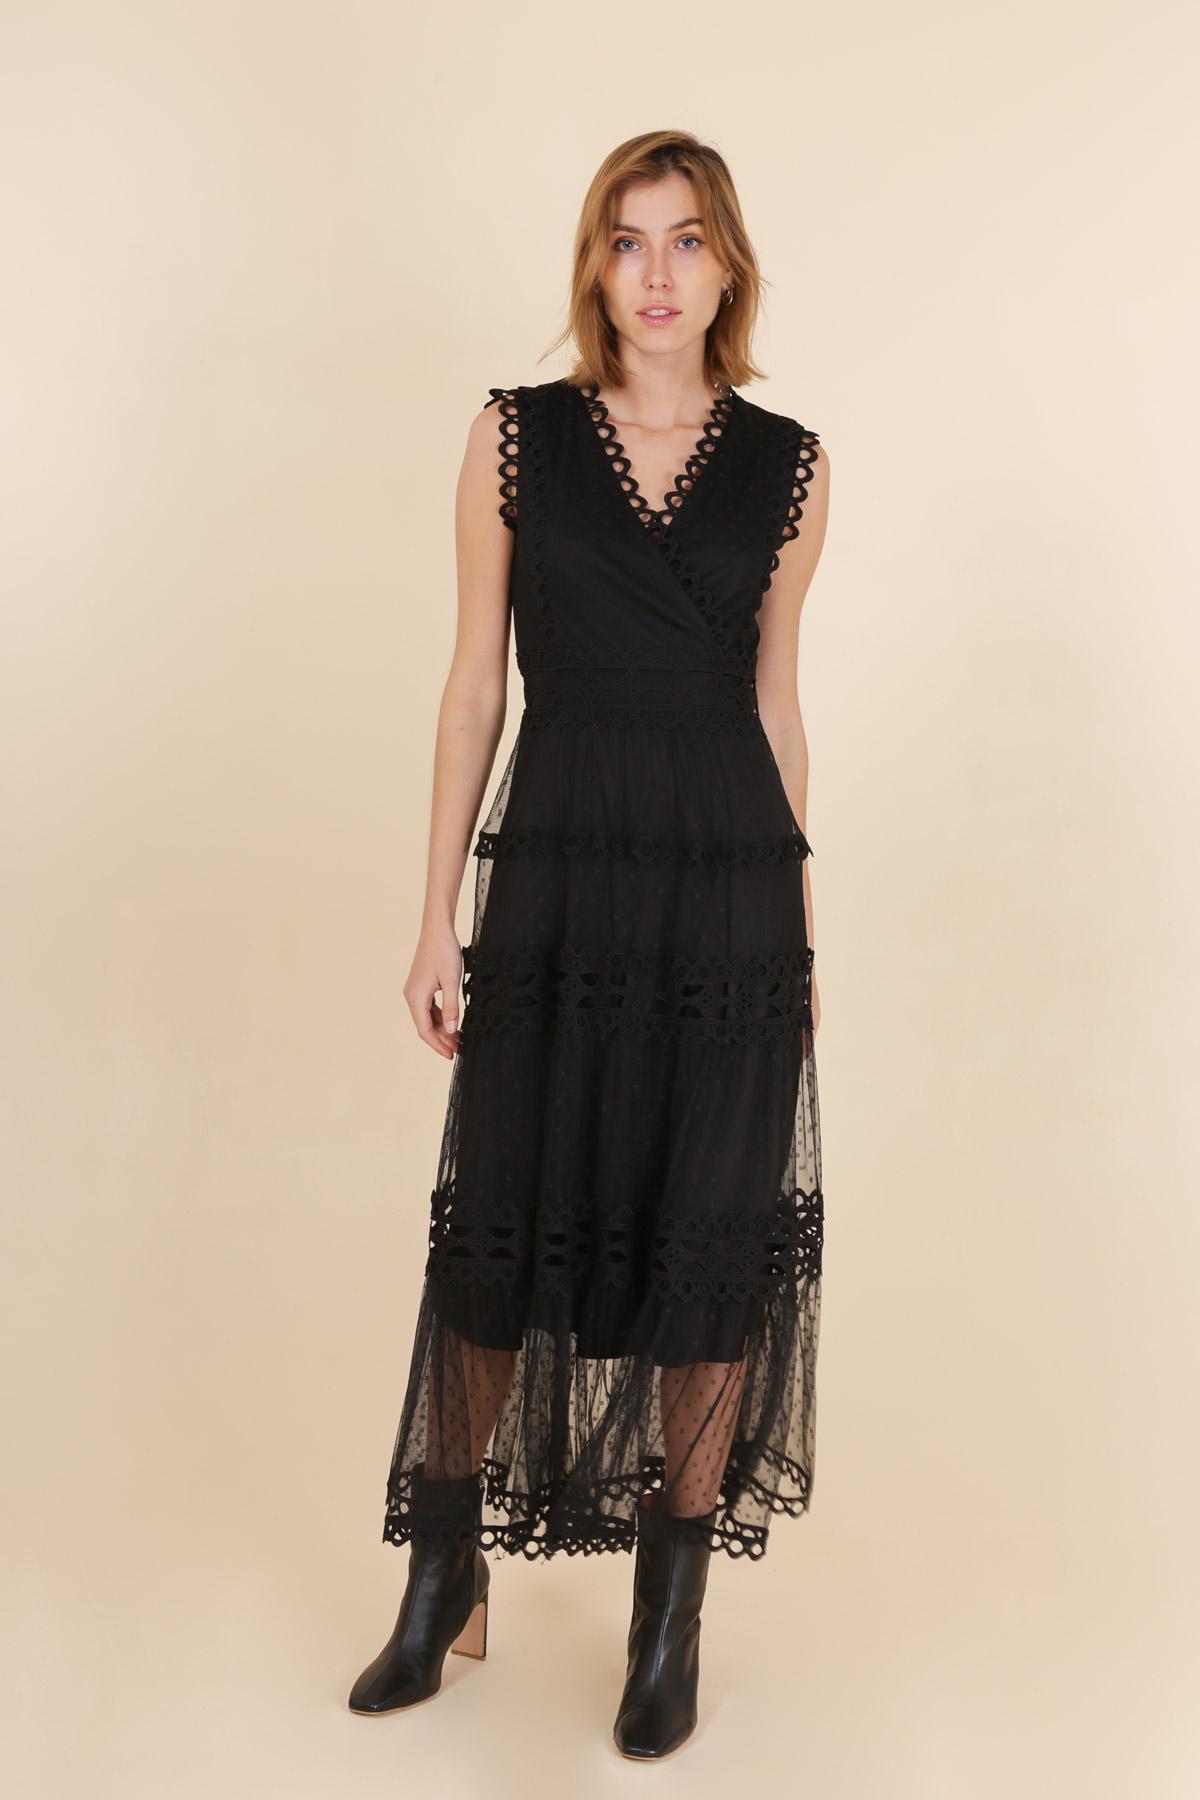 Robes longues Femme Noir Choklate 80983 #c Efashion Paris